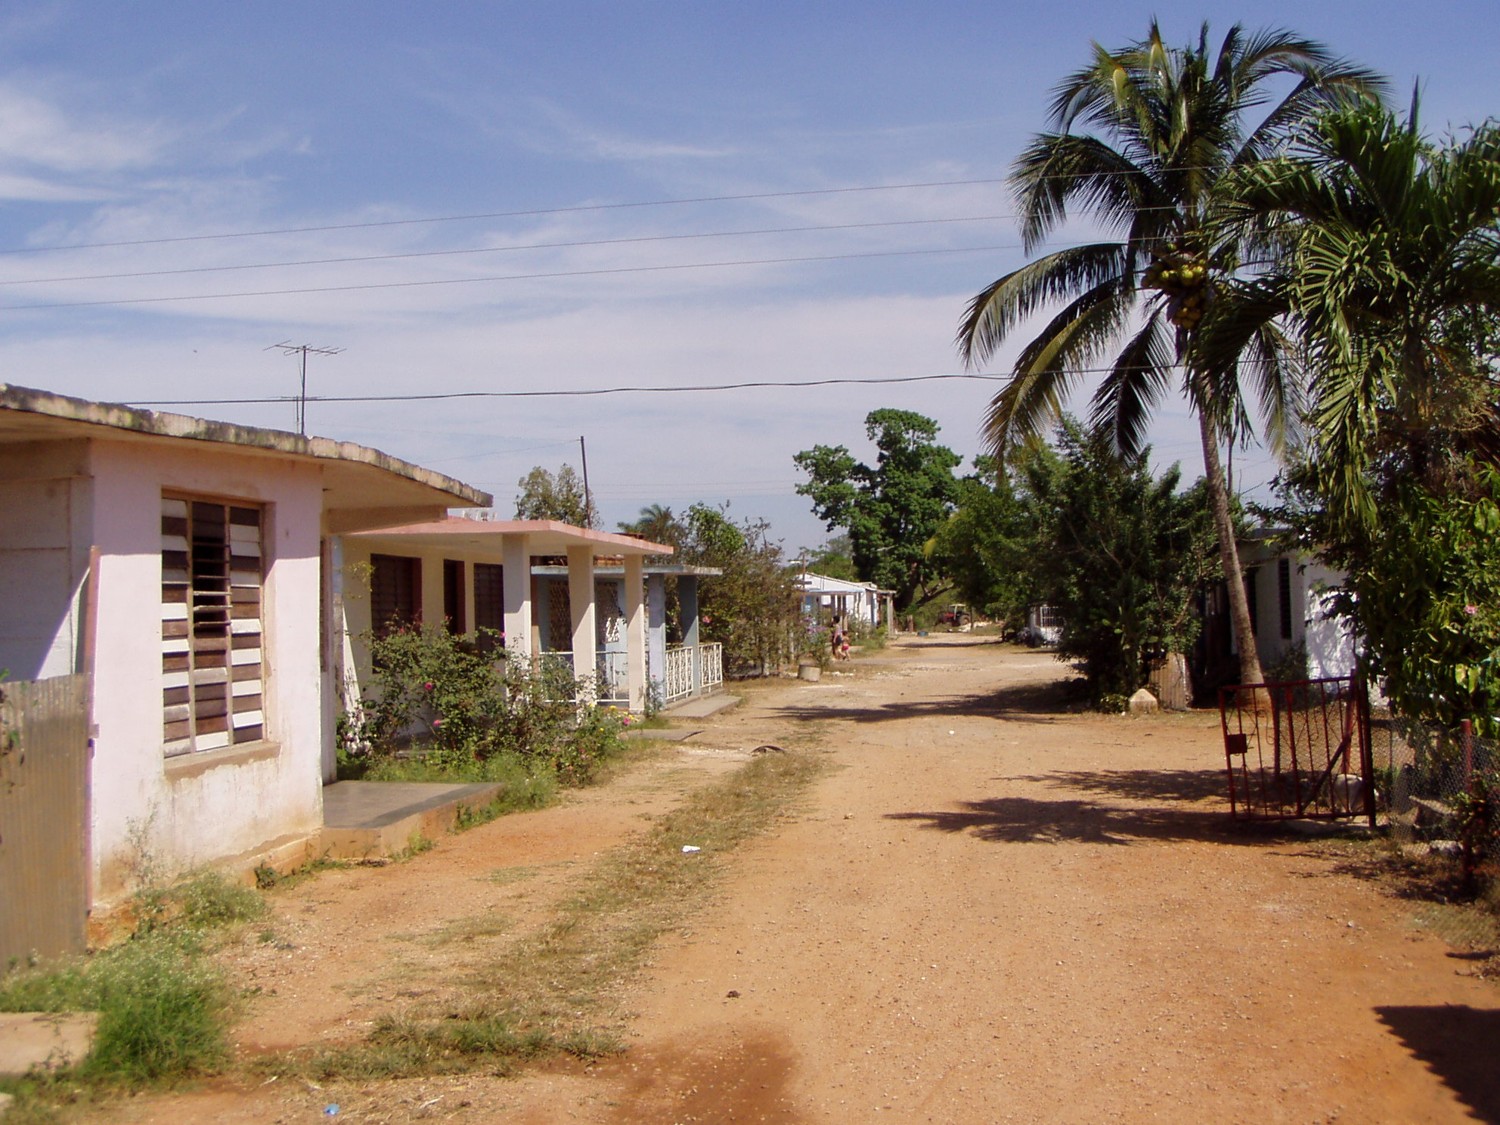 kubánský venkov - zde sháníme doutníky